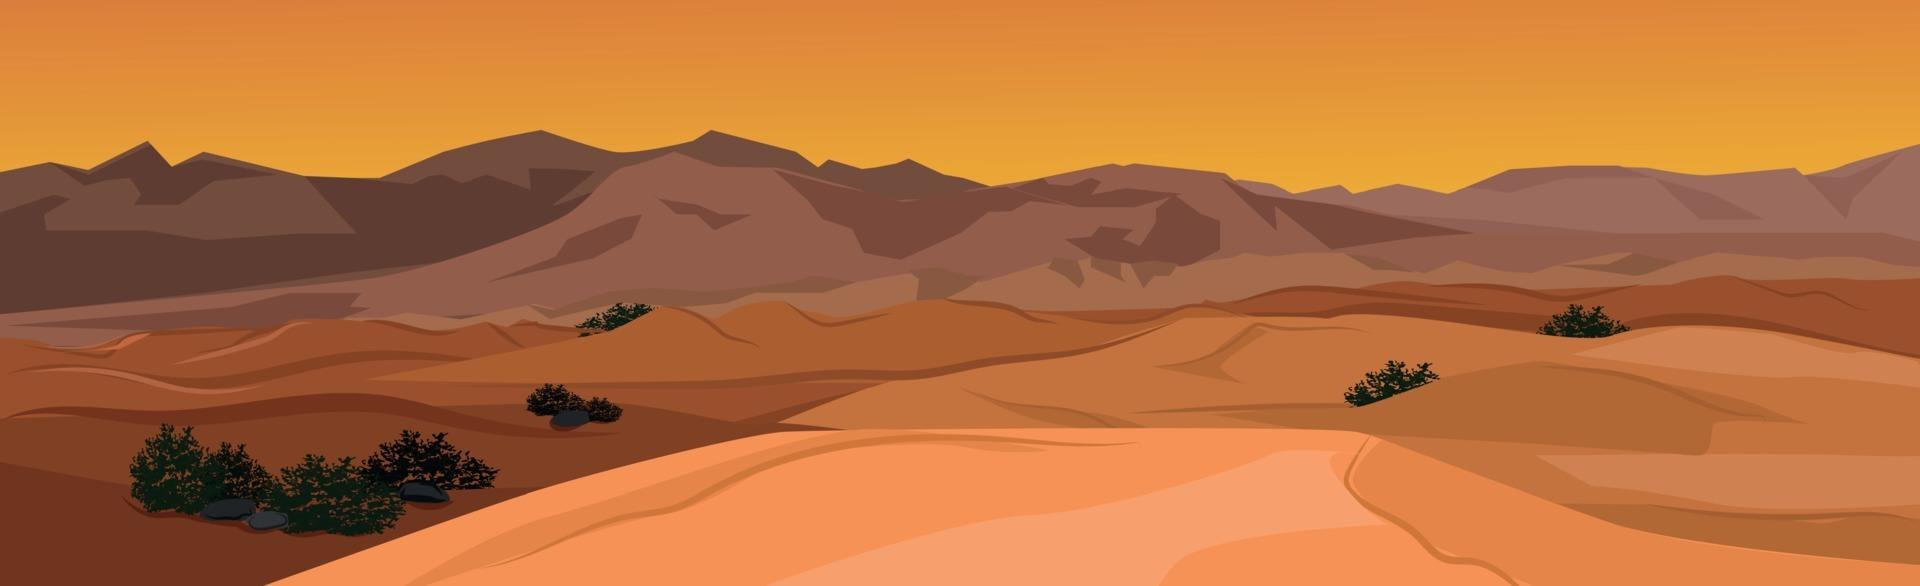 paysage panoramique désert chaud, dunes de sable - vecteur